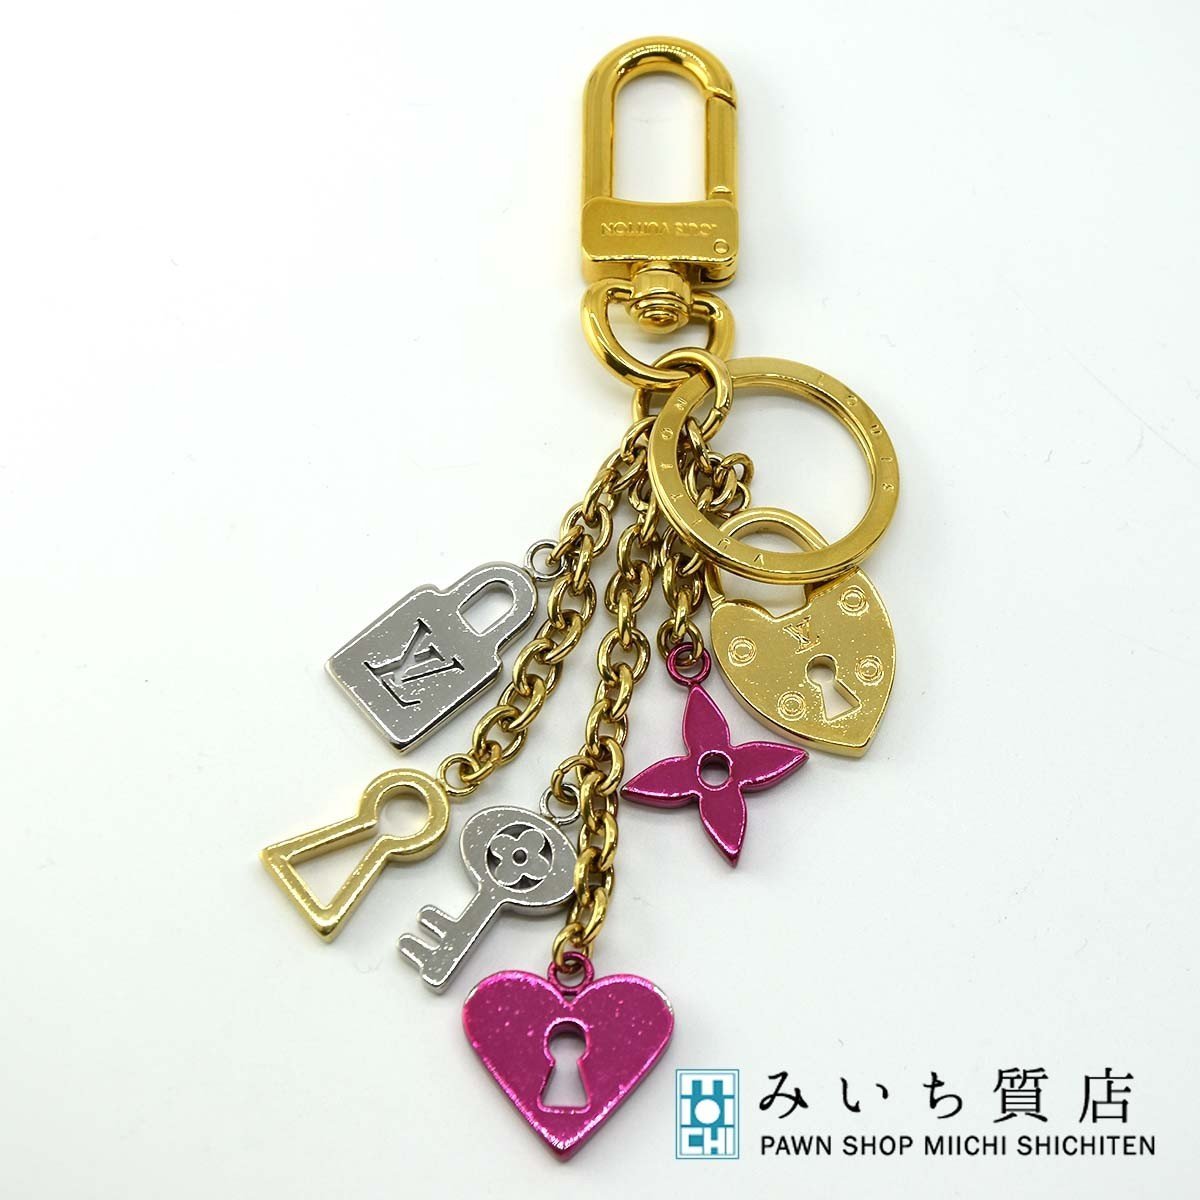  pawnshop LV charm porutokrela block M67438 key holder pink Louis Vuitton key charm H6150... pawnshop 